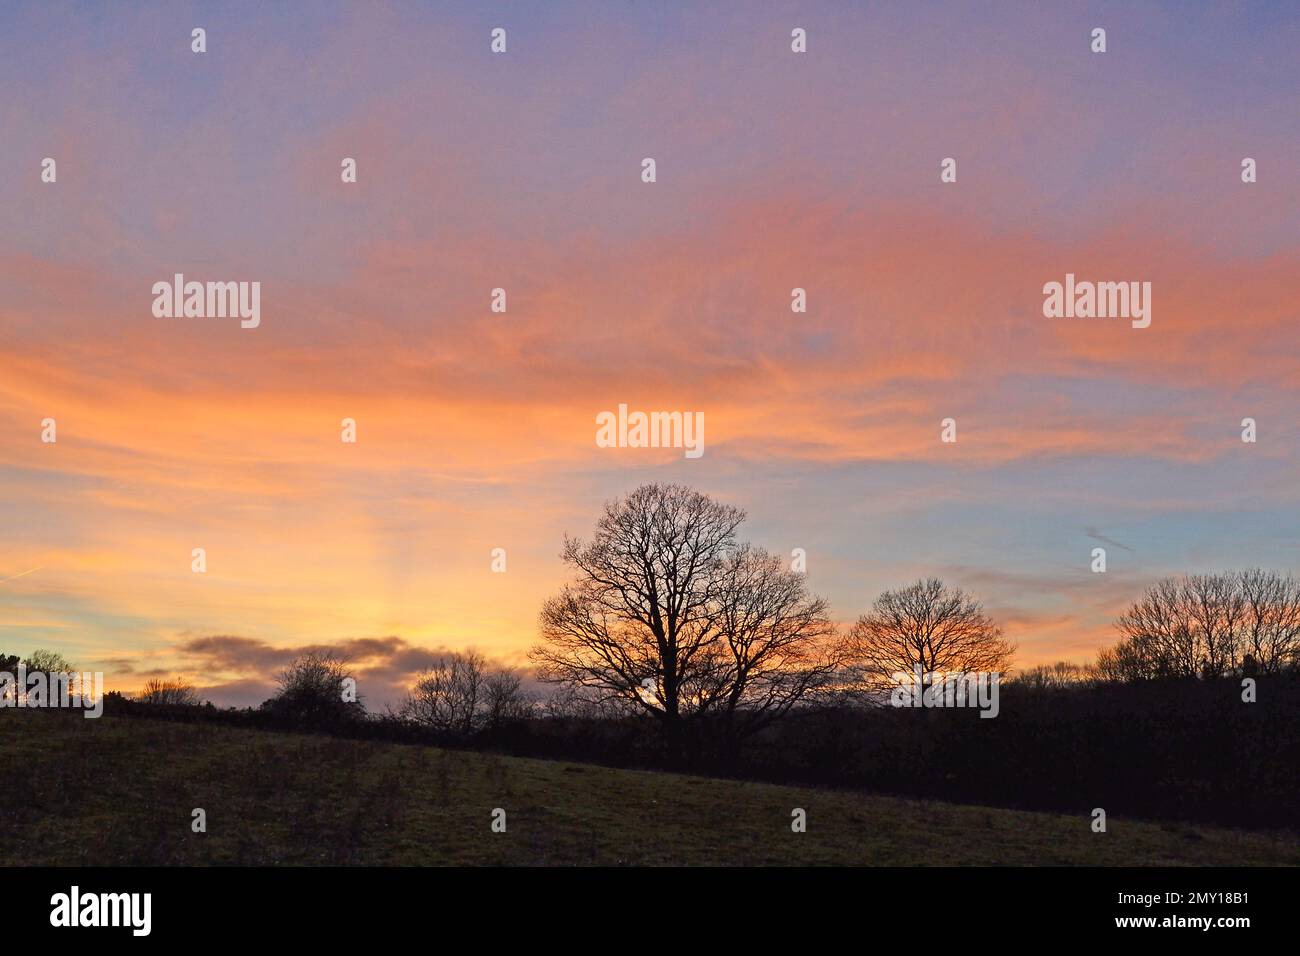 Nuage coloré de haute altitude vu du village d'IDE Hill, Weald of Kent, hiver au crépuscule lors d'une nuit d'hiver reflétant le coucher du soleil avec silhouette d'arbre Banque D'Images